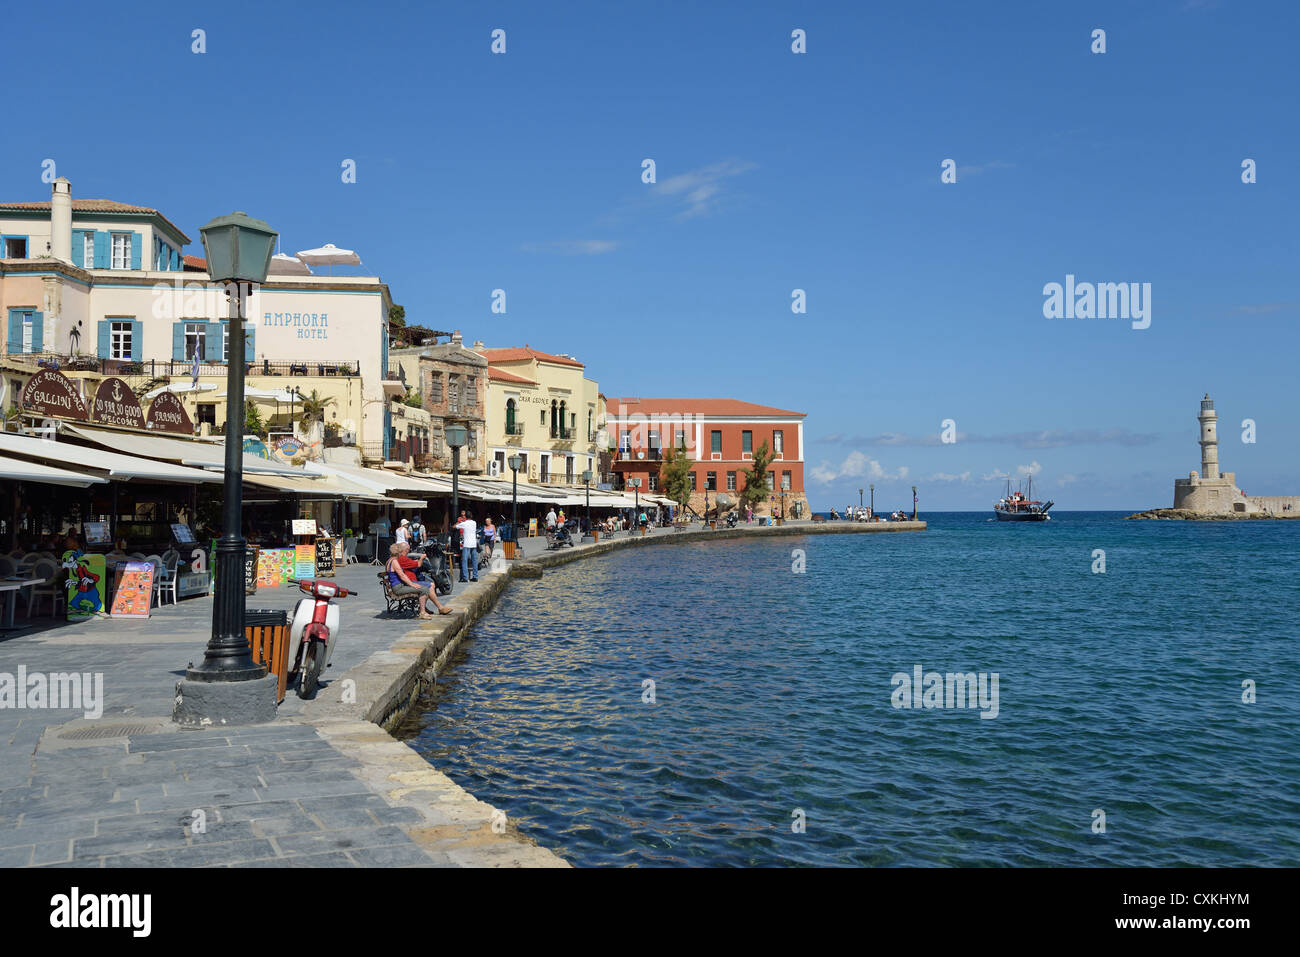 Restaurants on seafront promenade, Chania, Chania Prefecture, Crete, Greece Stock Photo